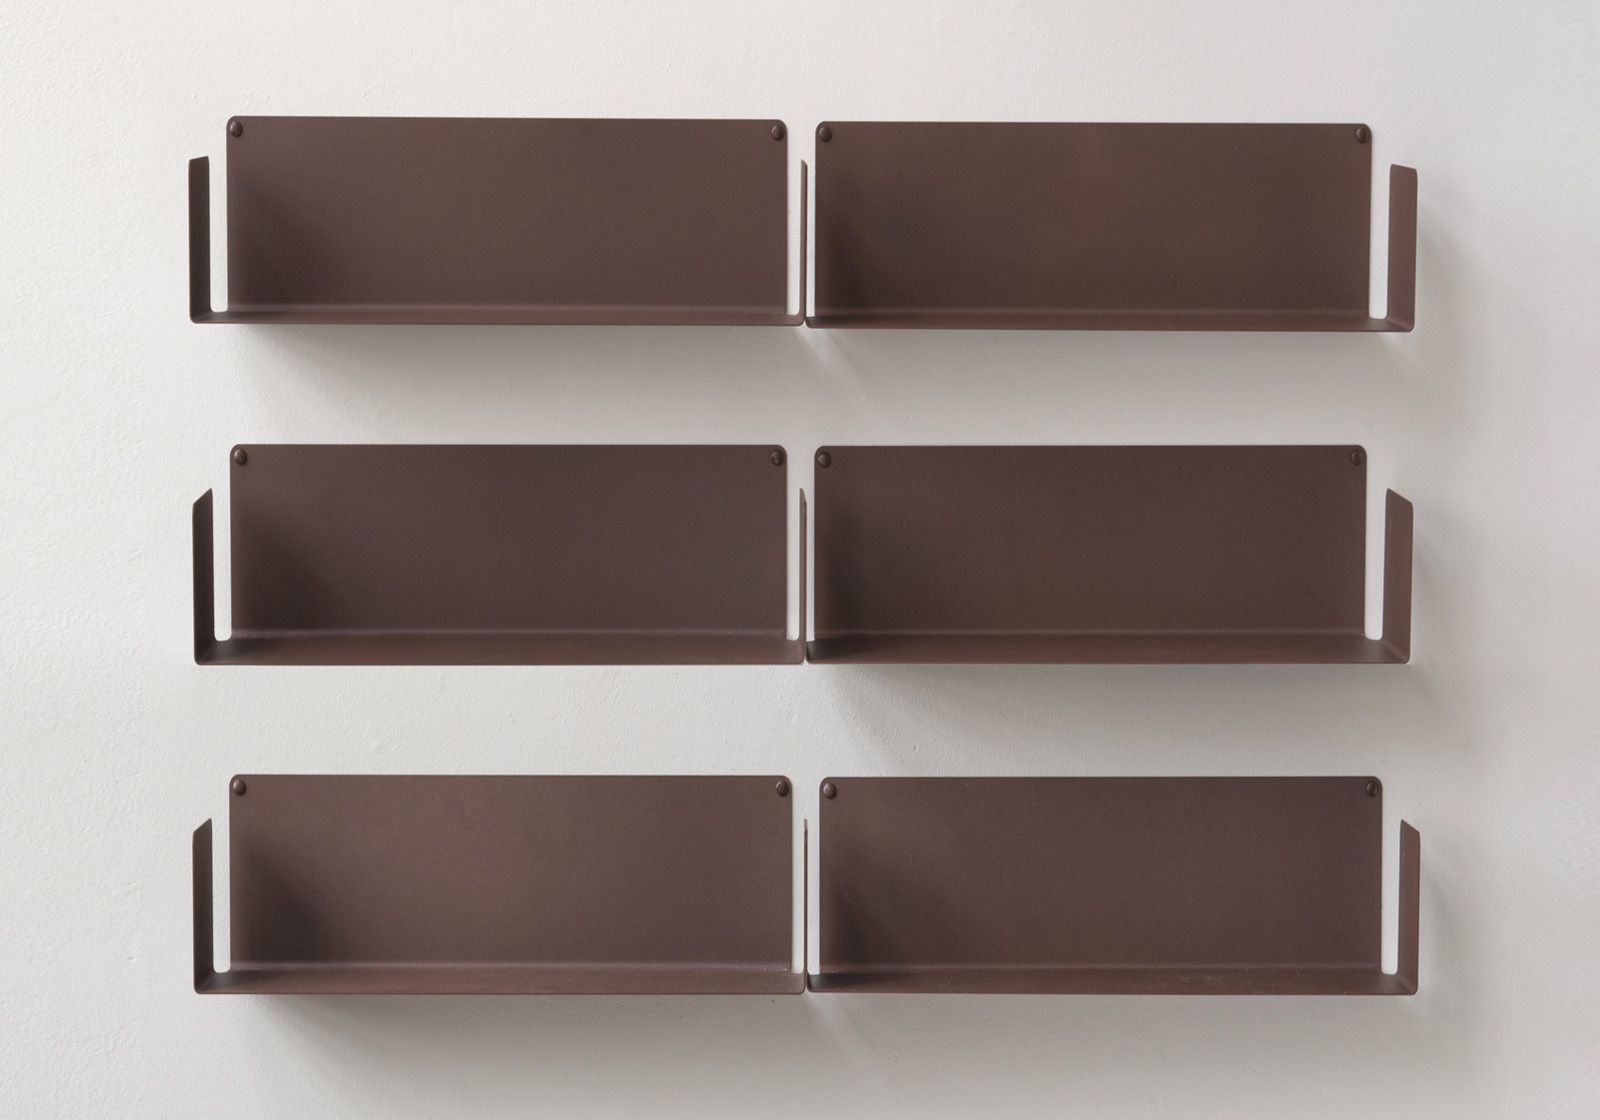 Floating shelves rust colour - 45 x 15 cm - Set of 6 Rust color shelves - 1